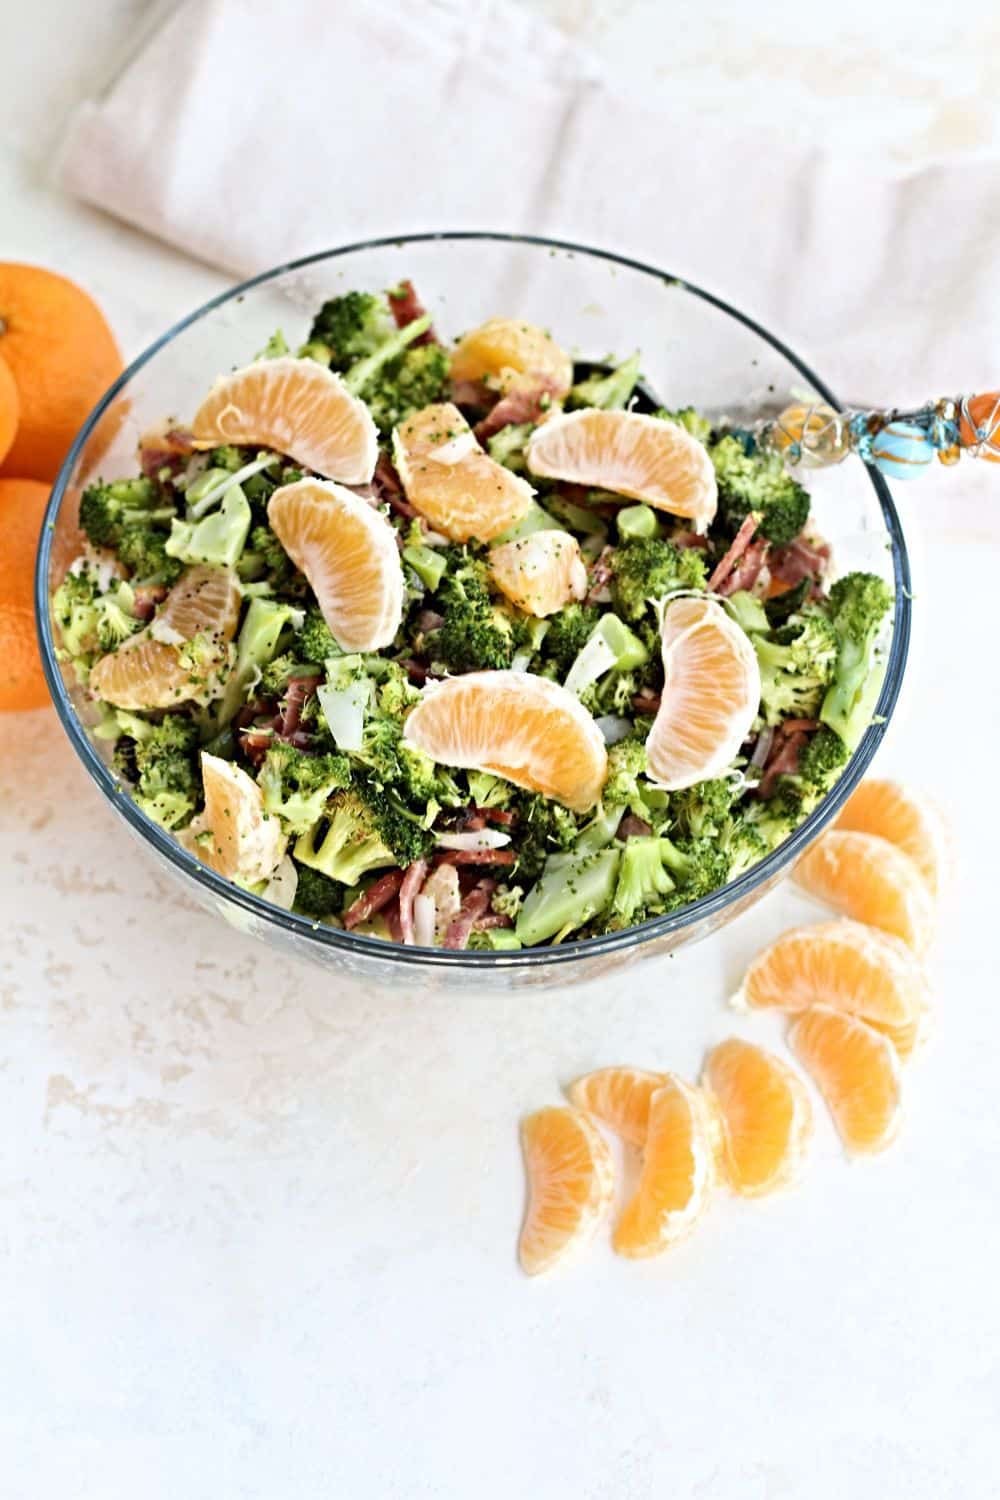 Healthy Mandarin and broccoli salad